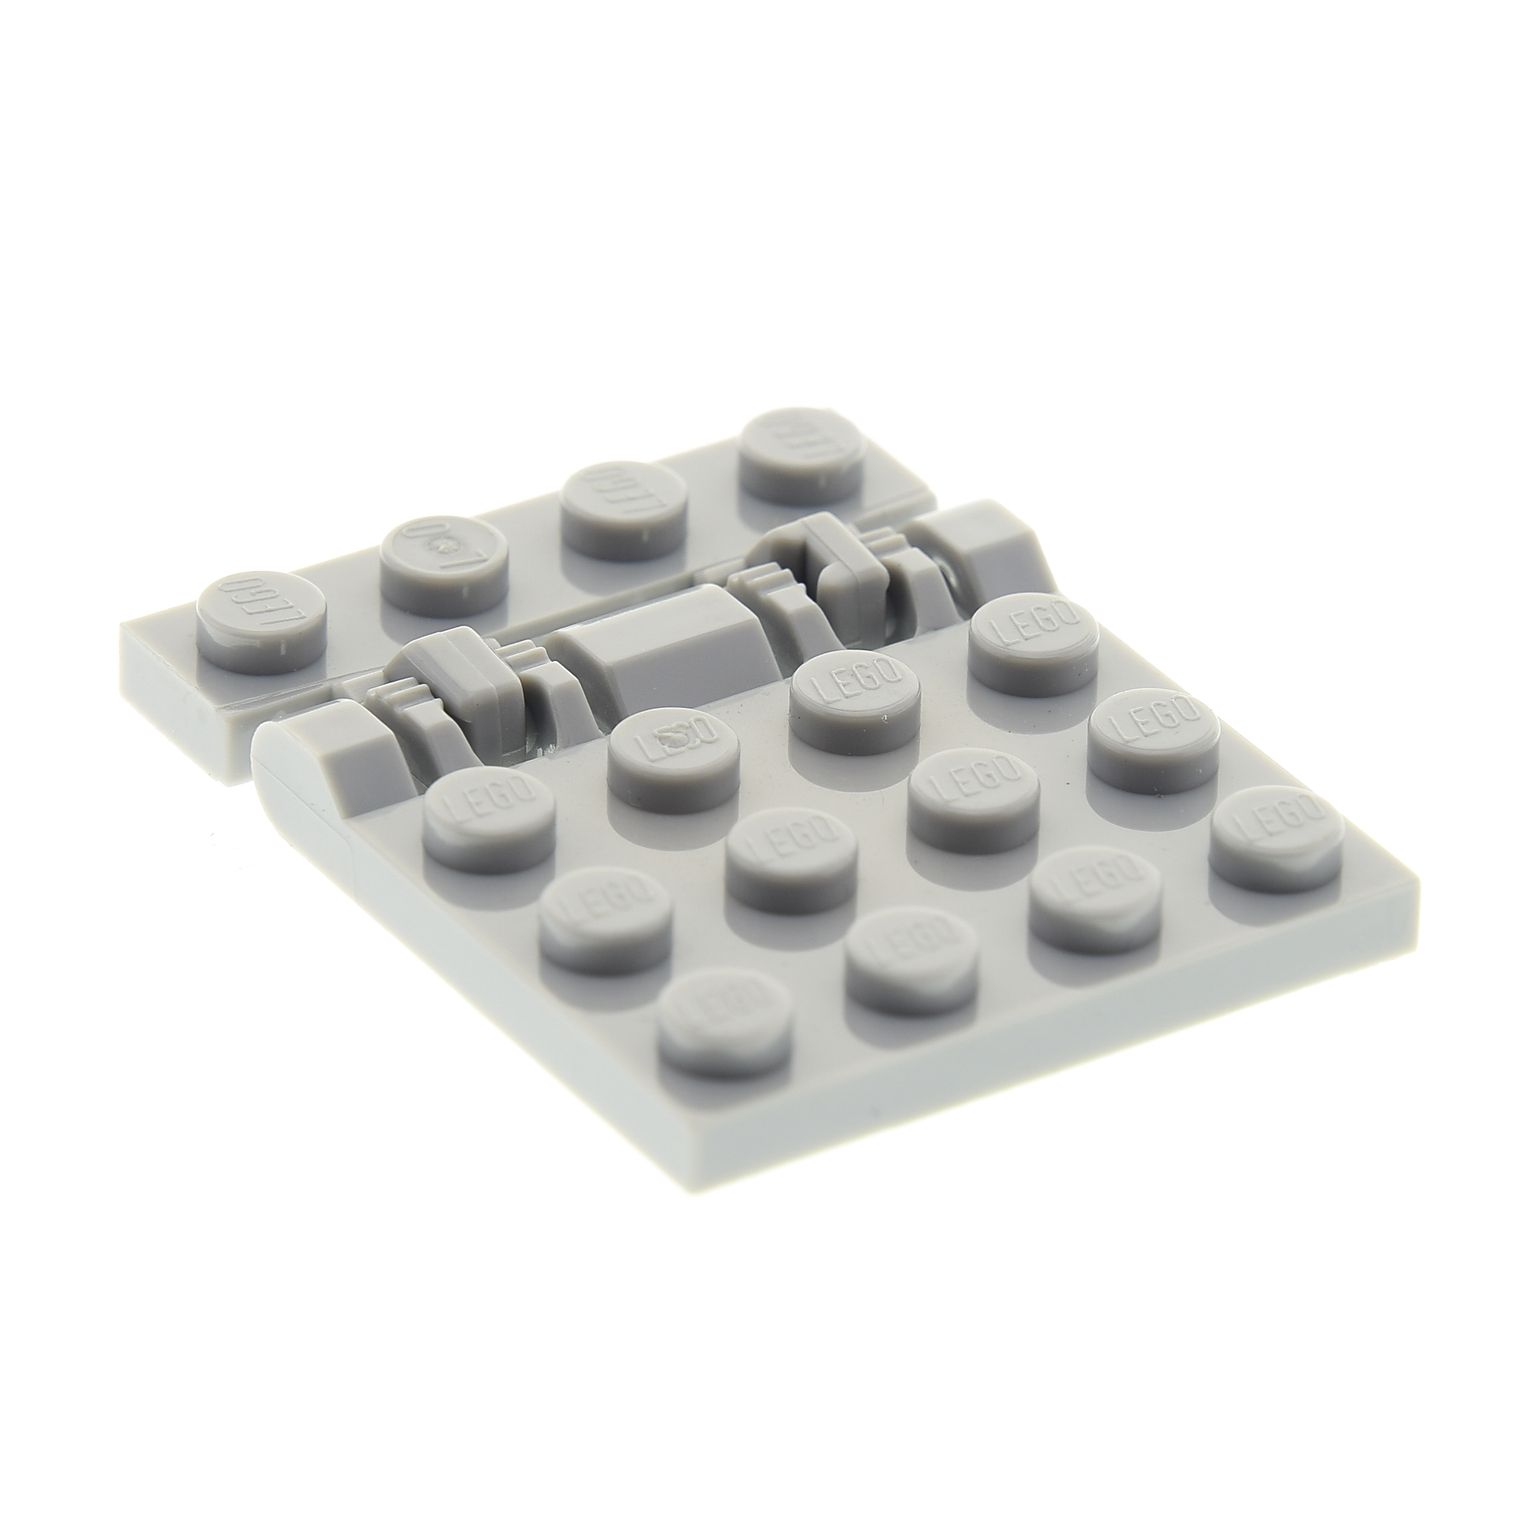 Halterung 44568 1x4 Lego  2 Paar  Scharnier Platte 44570 neu hellgrau  4x4 